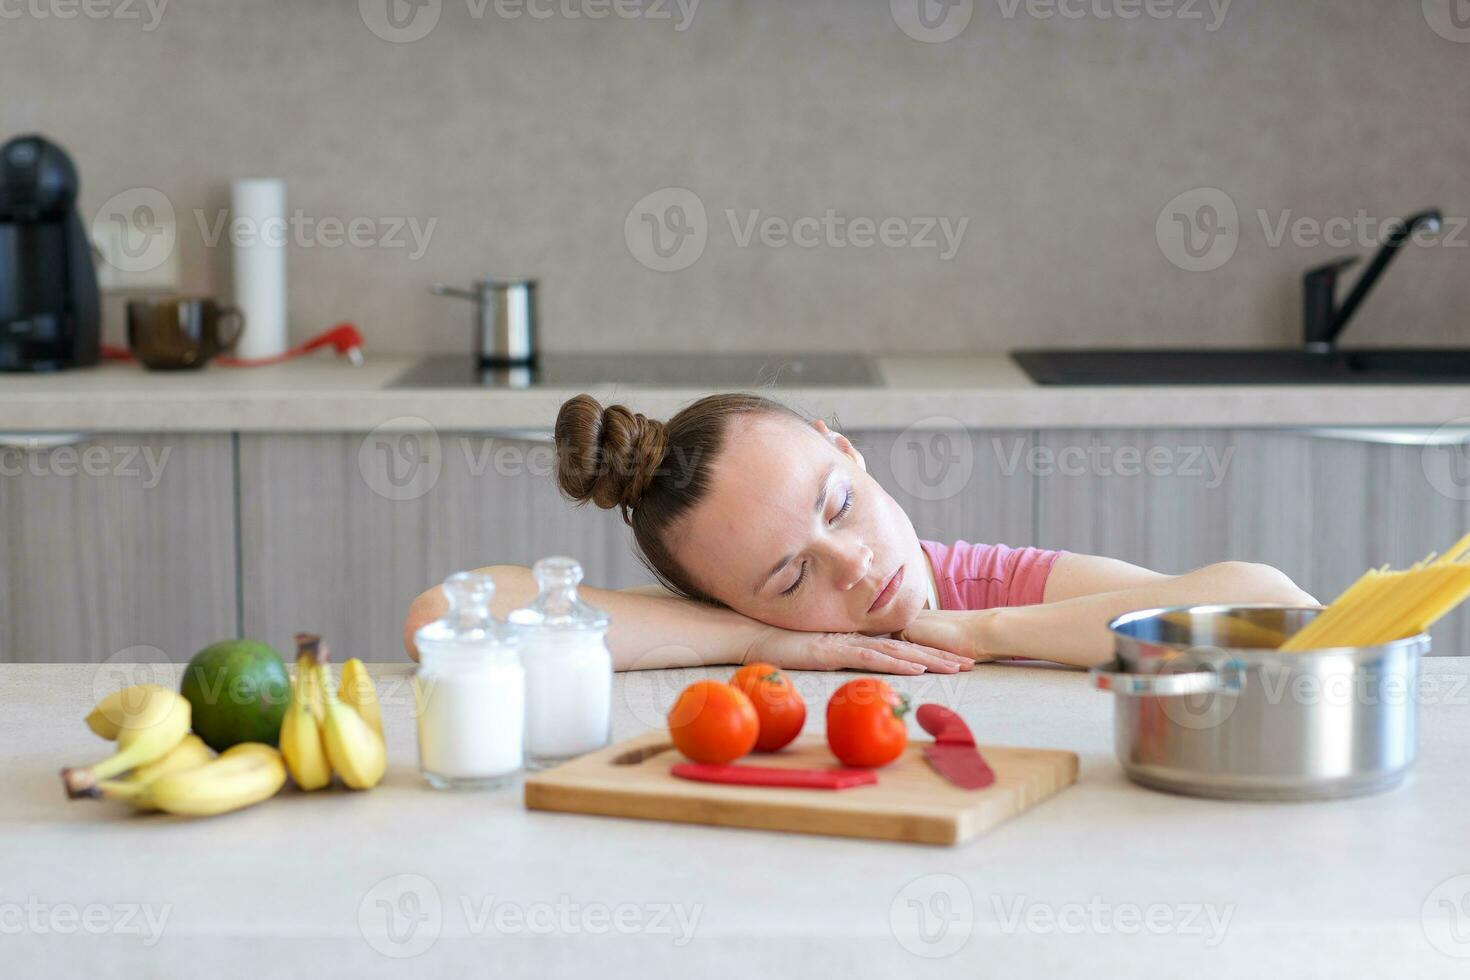 jung Hausfrau im das Küche foto